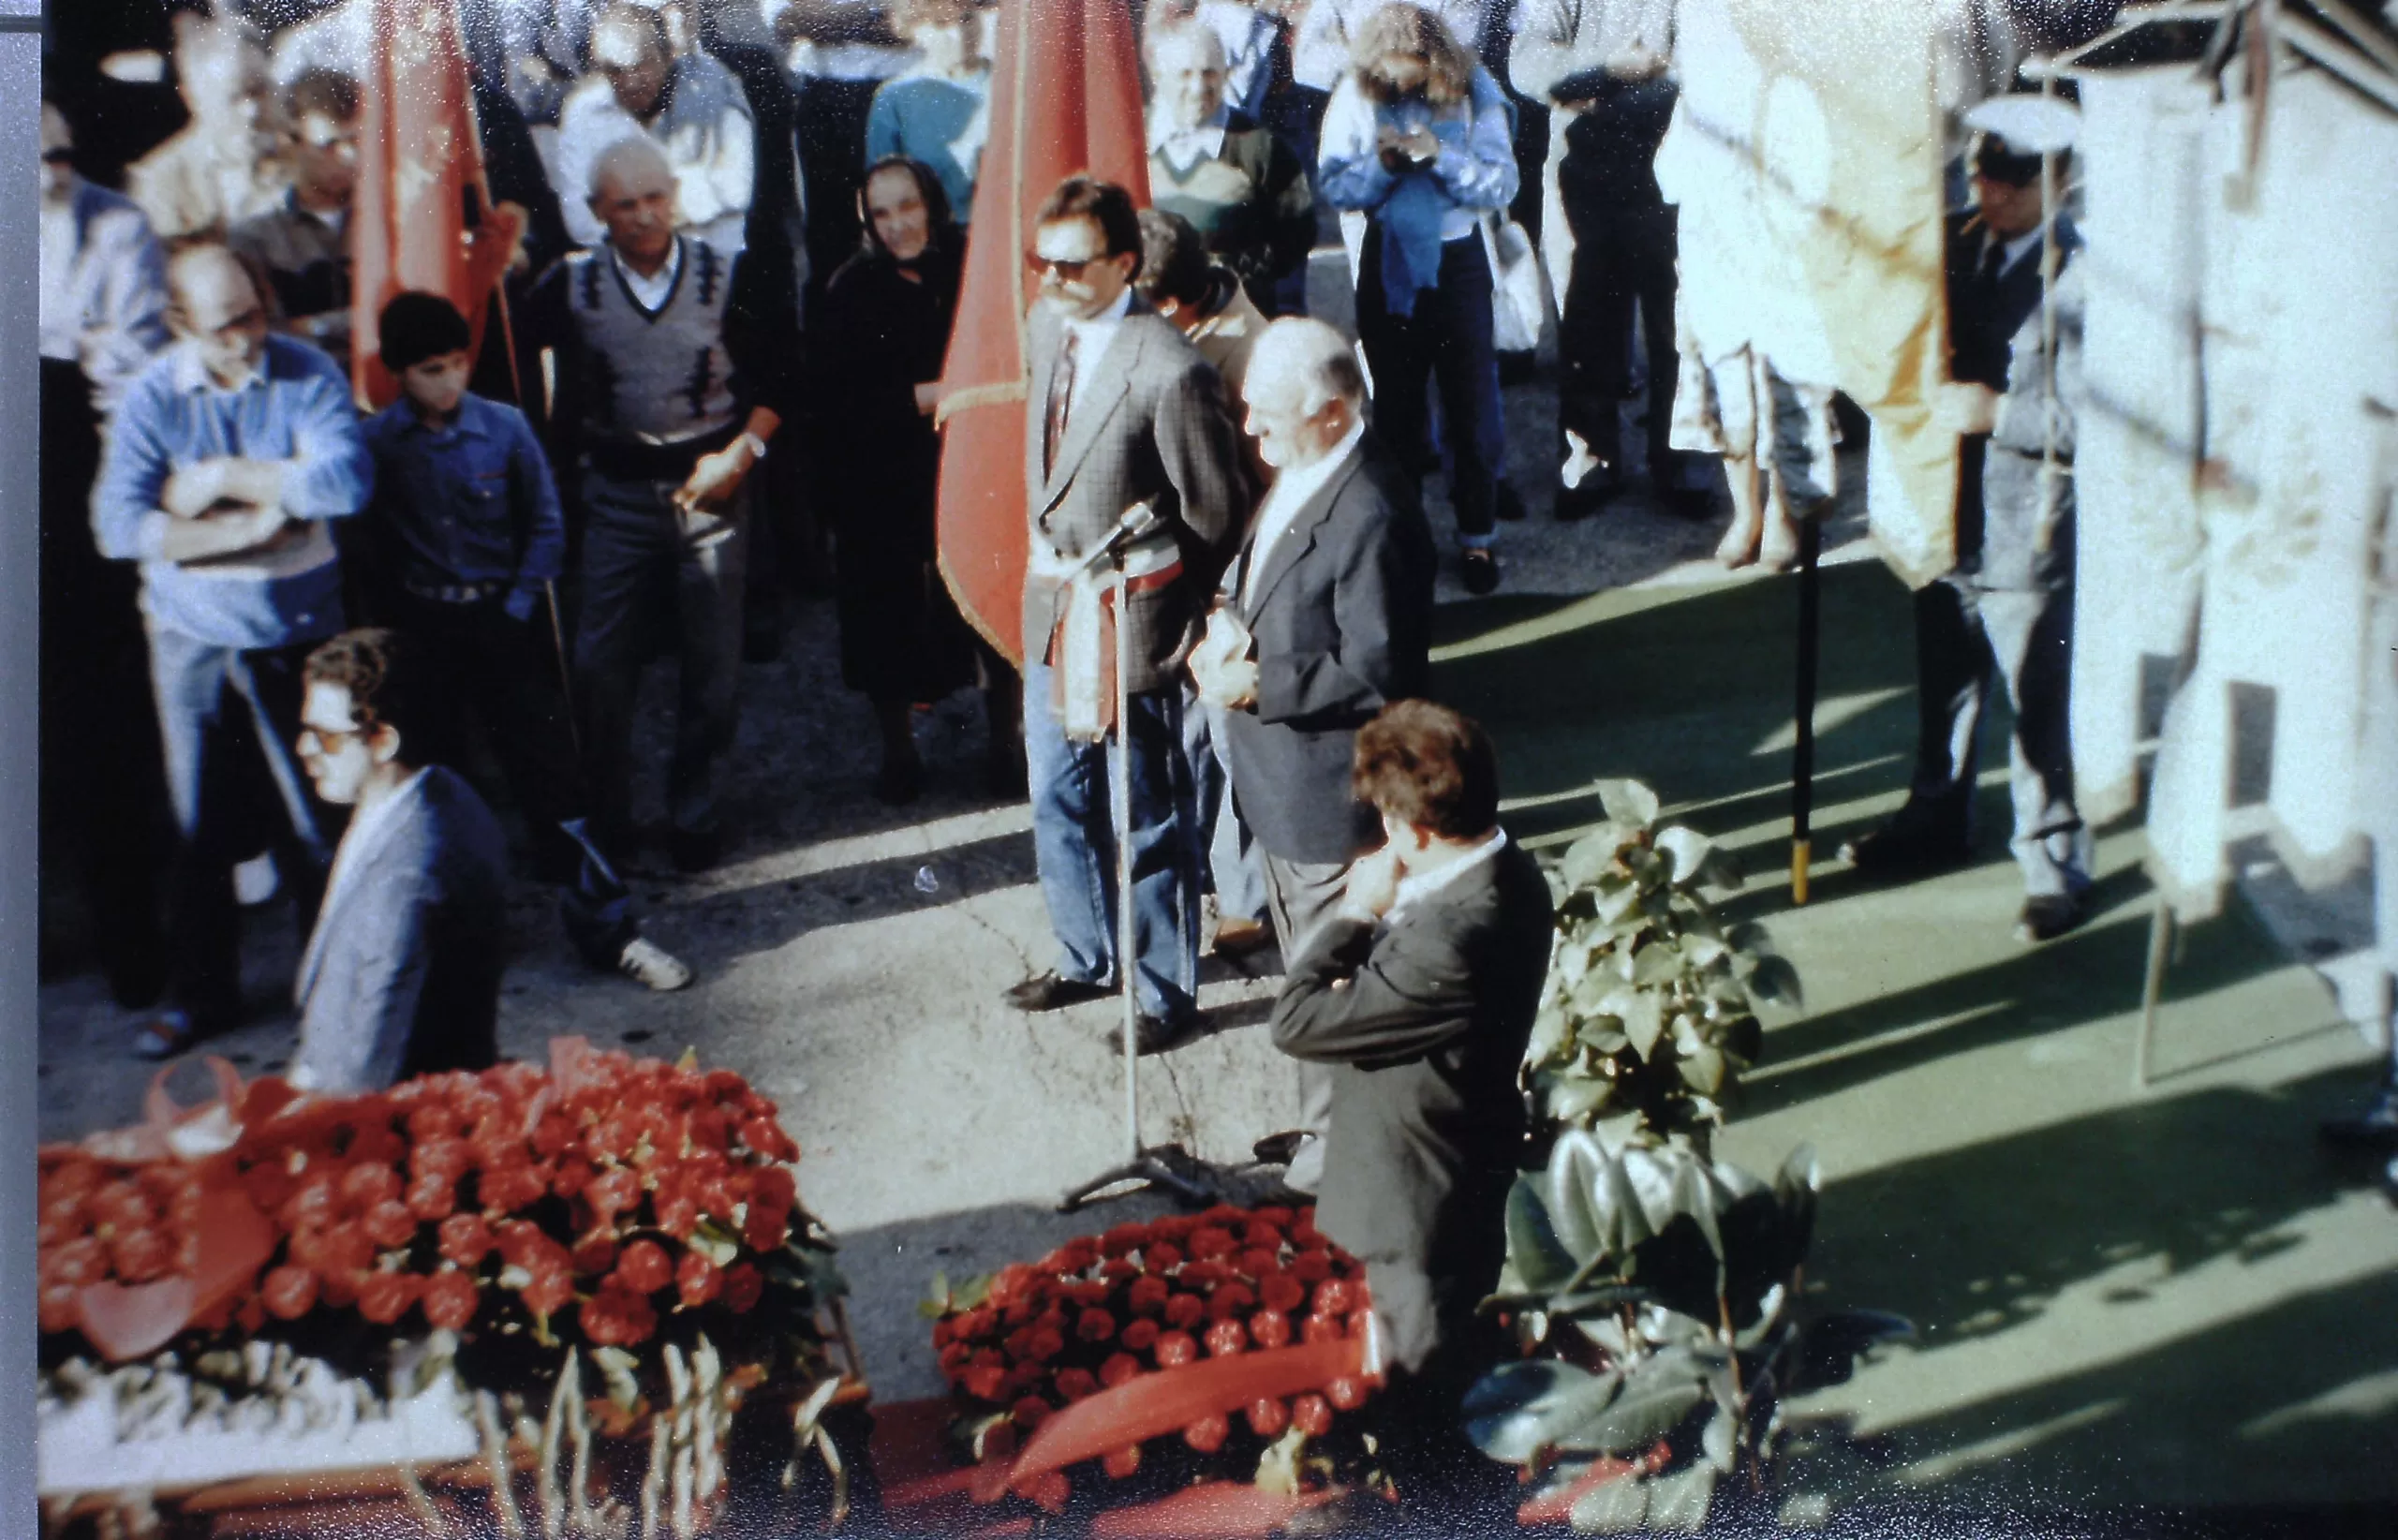 13 ottobre 1985. Torriana. Il funerale di Davide Celli. Al microfono, sulla piazza del Paese, Walter Ceccaroni per l'orazione funebre commemorativa